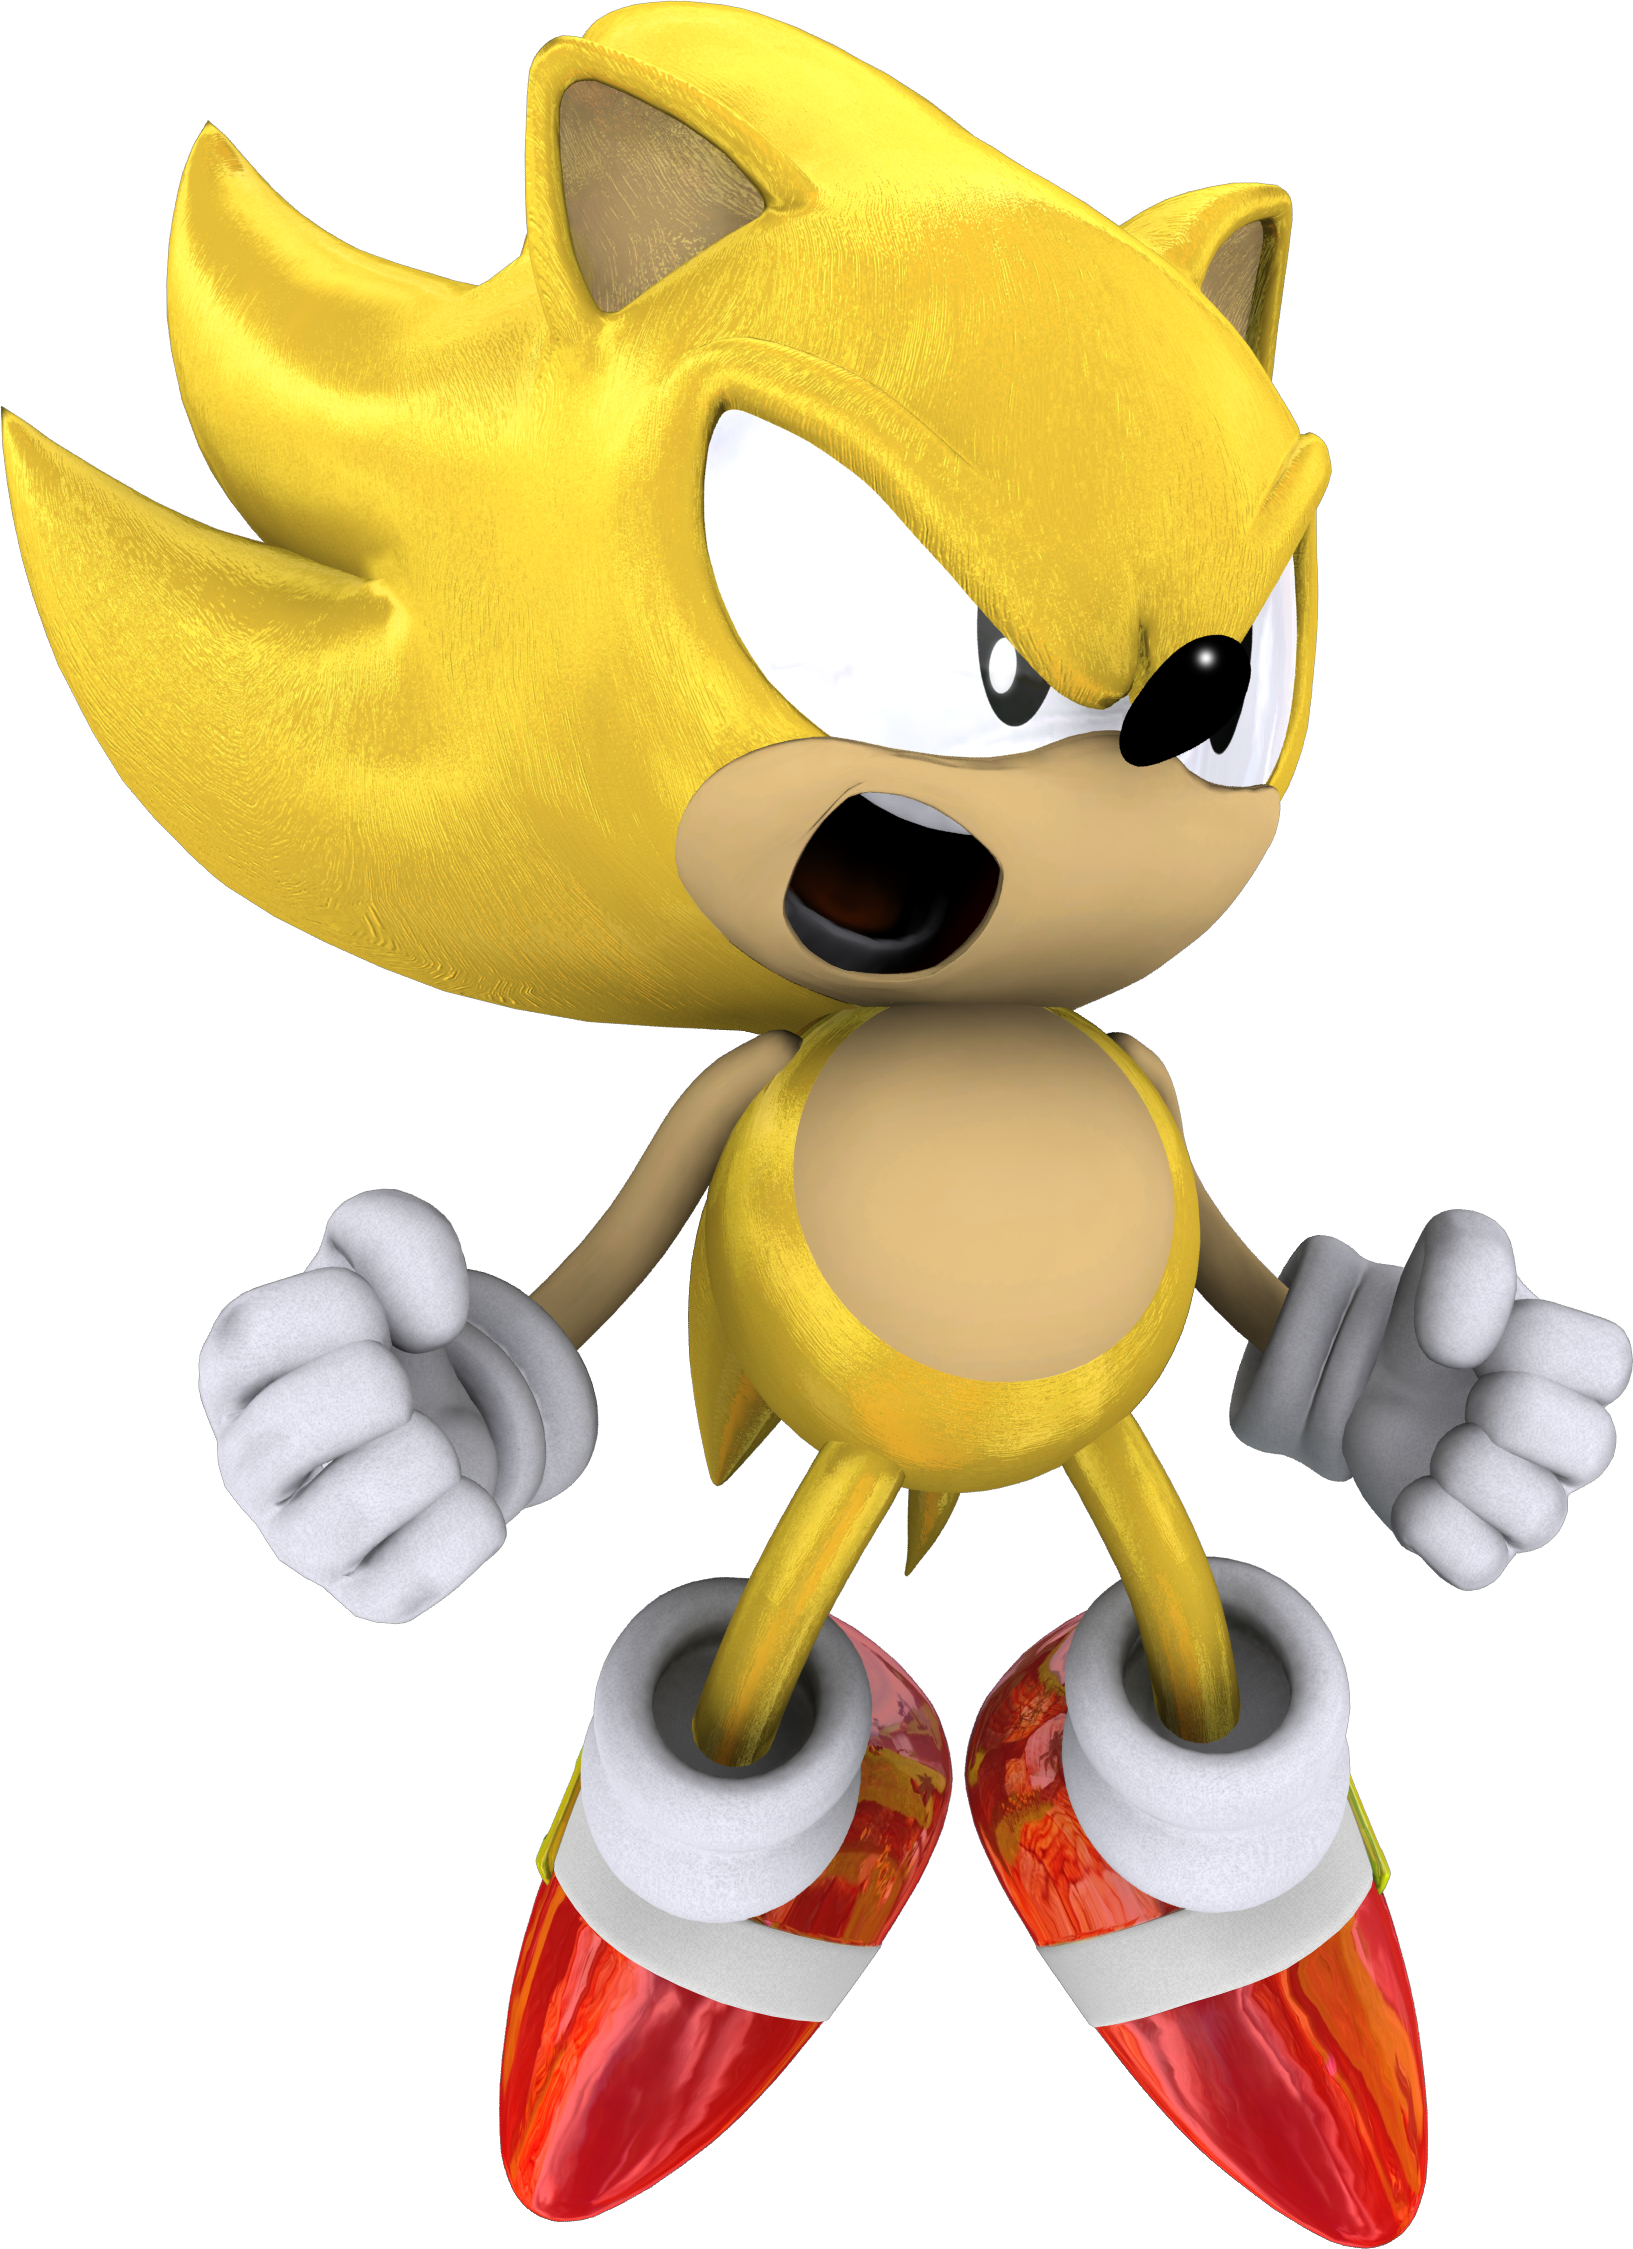 Classic Super Sonic The Hedgehog By Itshelias94 - Sonic The Hedgehog (1633x2249)